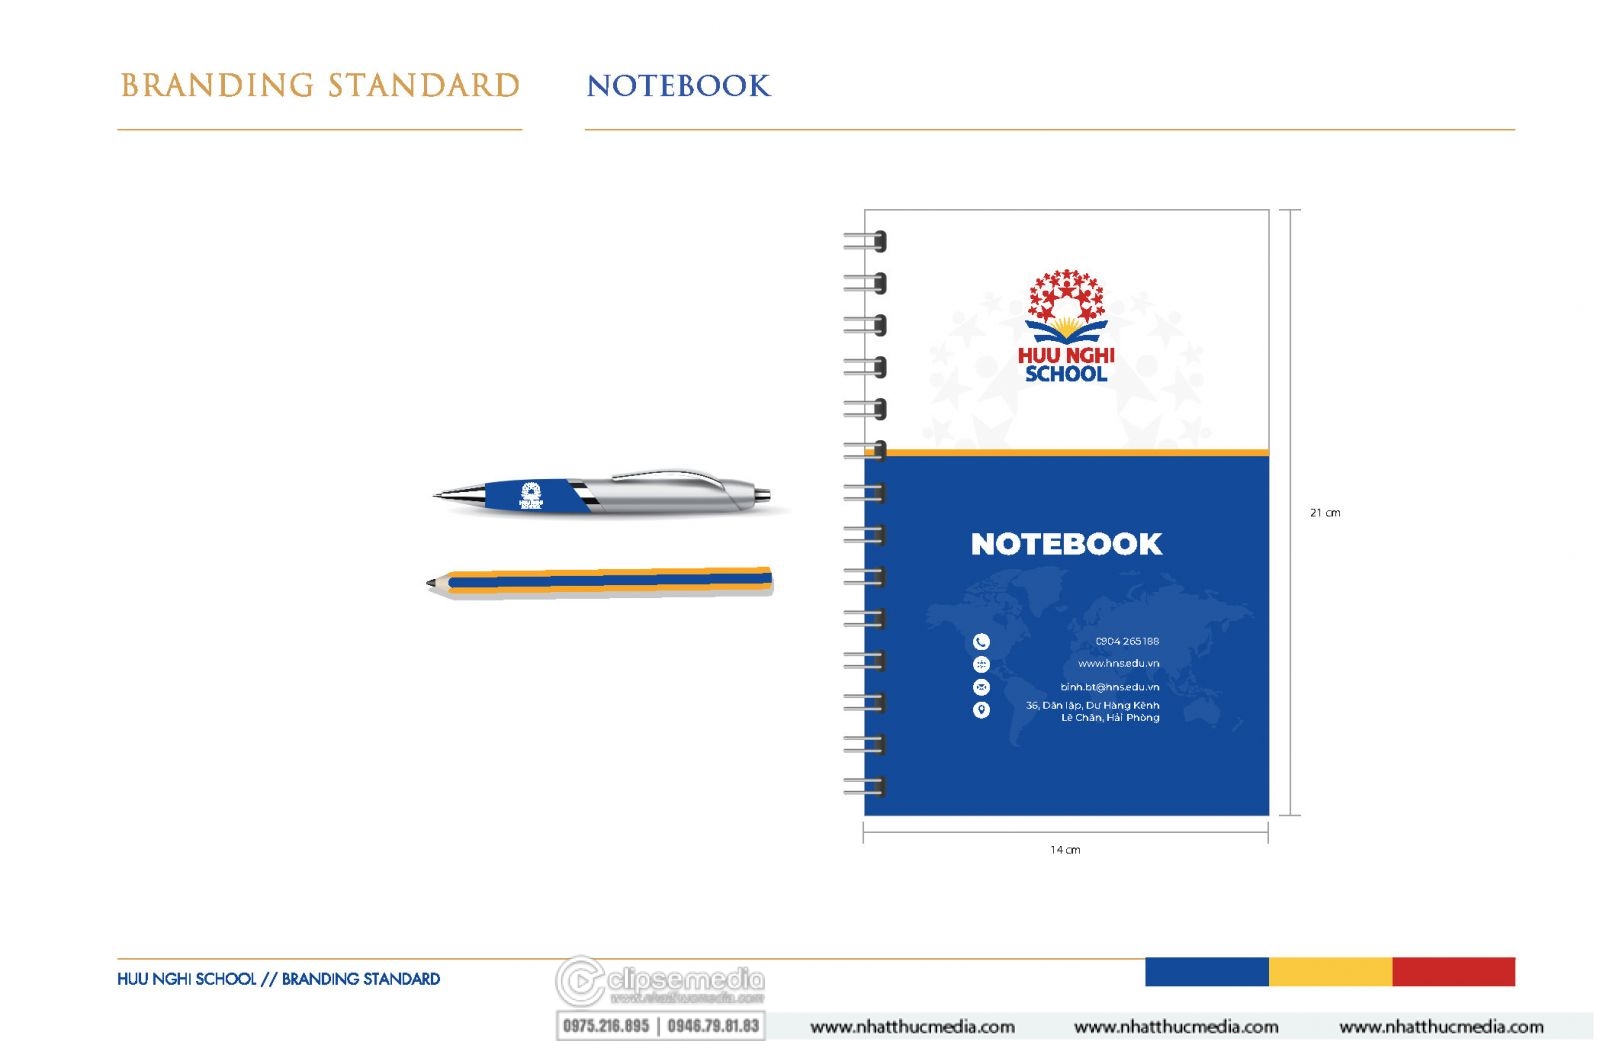 thiết kế notebook hải phòng